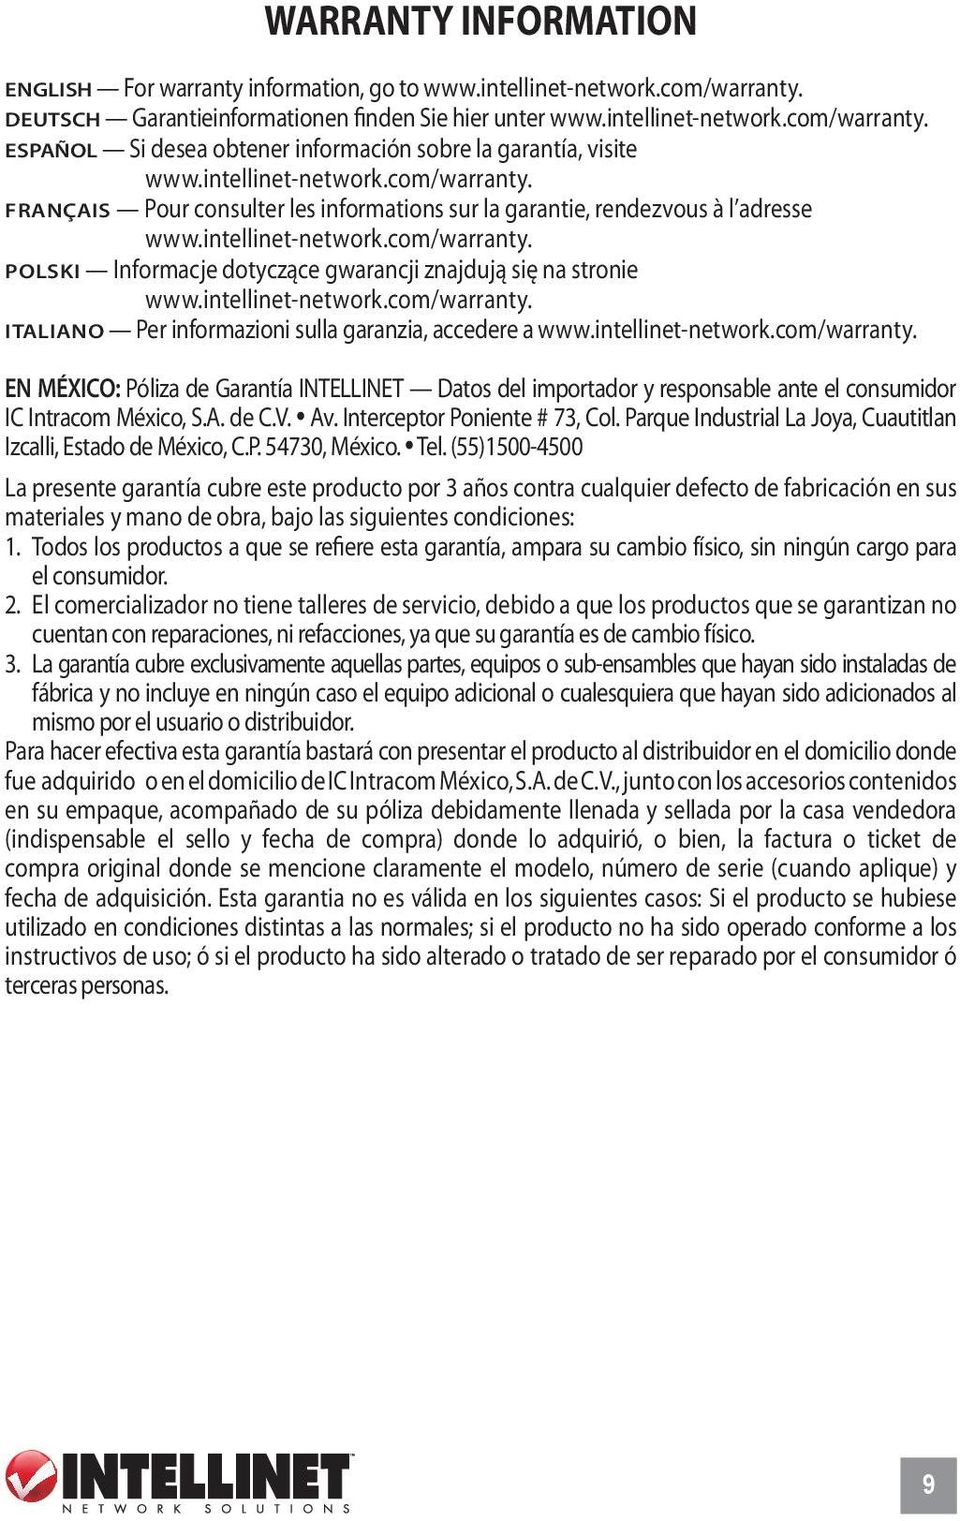 intellinet-network.com/warranty. ITALIANO Per informazioni sulla garanzia, accedere a www.intellinet-network.com/warranty. EN MÉXICO: Póliza de Garantía INTELLINET Datos del importador y responsable ante el consumidor IC Intracom México, S.